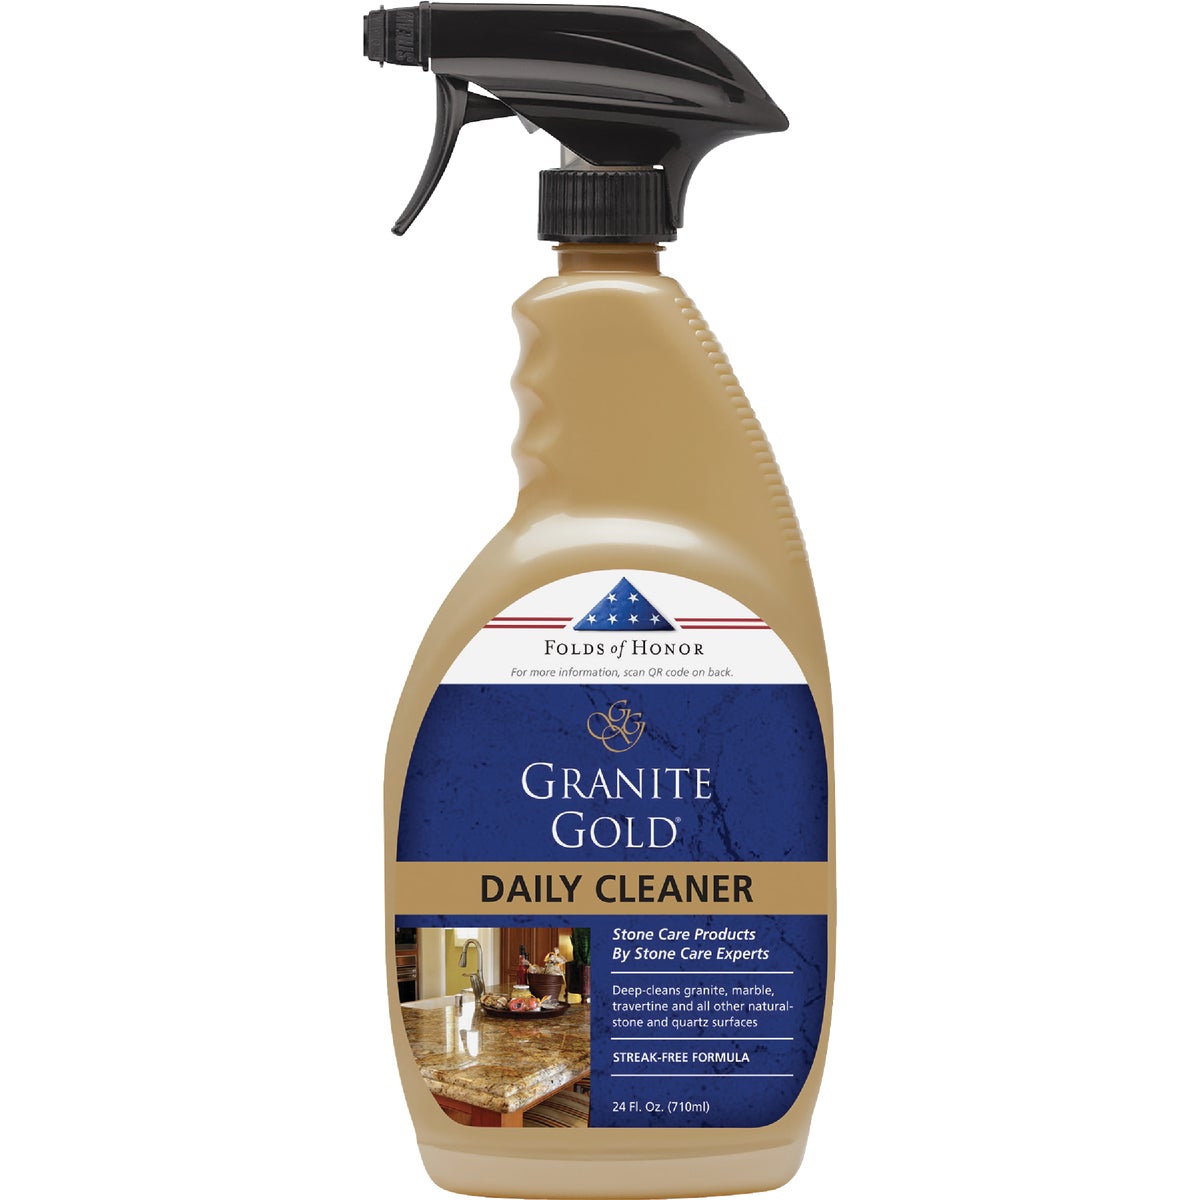 Granite Gold 24 Oz. Daily Granite Cleaner